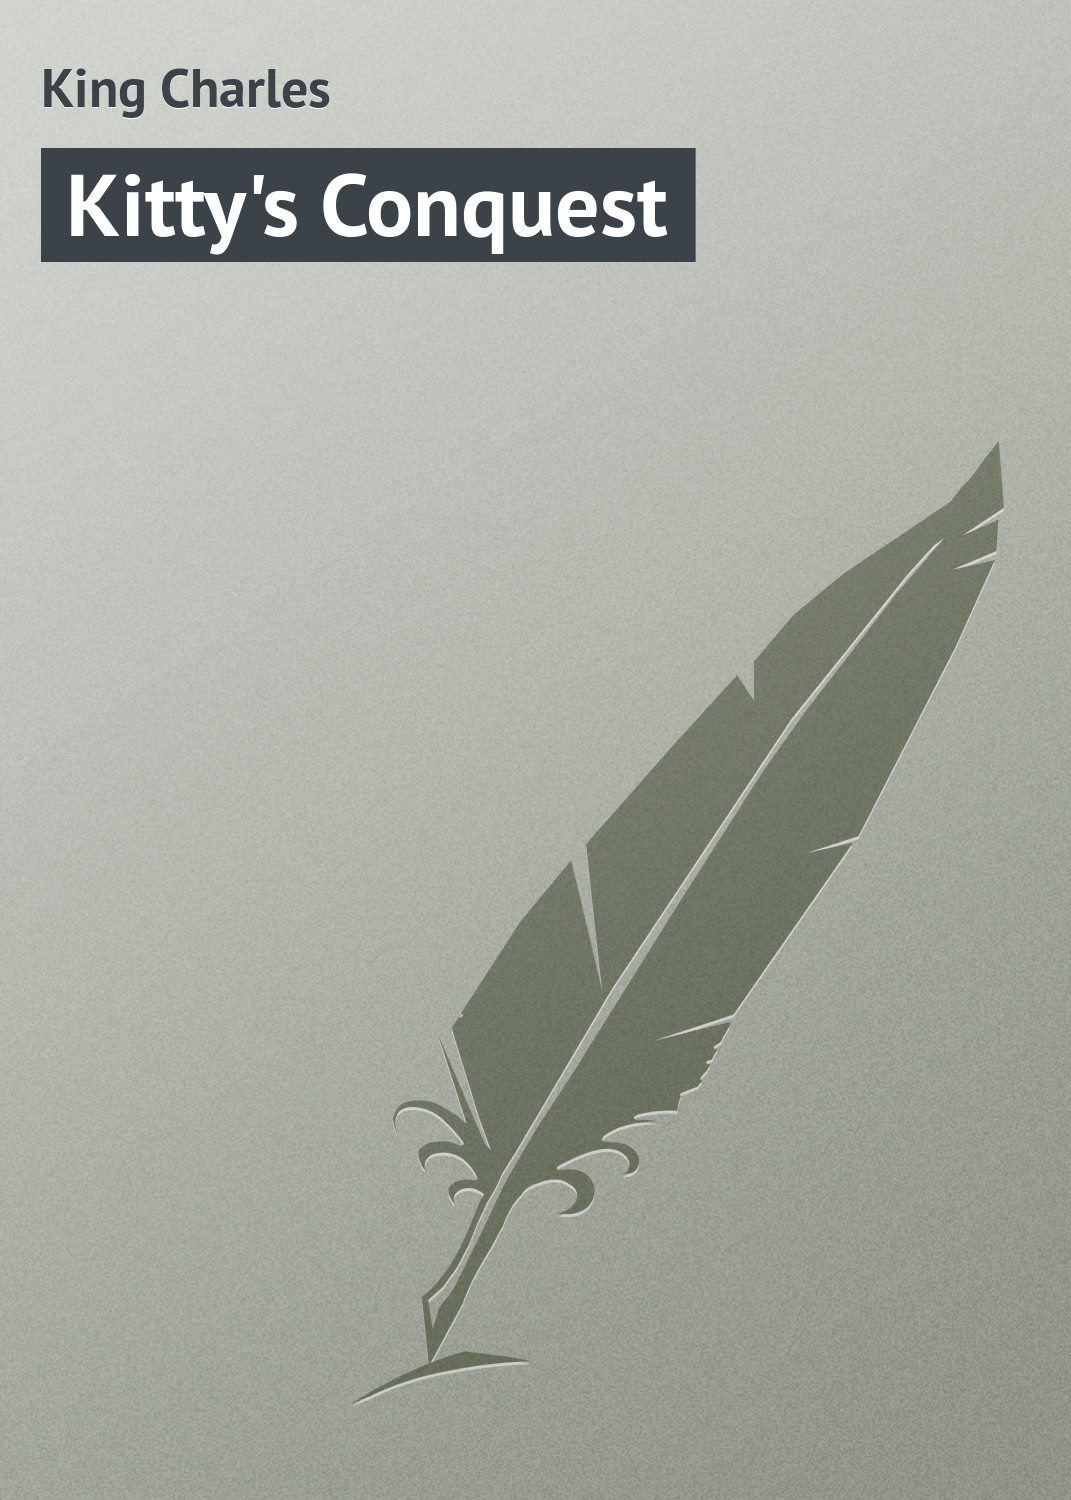 Книга Kitty's Conquest из серии , созданная Charles King, может относится к жанру Зарубежная классика, Зарубежные любовные романы. Стоимость электронной книги Kitty's Conquest с идентификатором 23157915 составляет 5.99 руб.